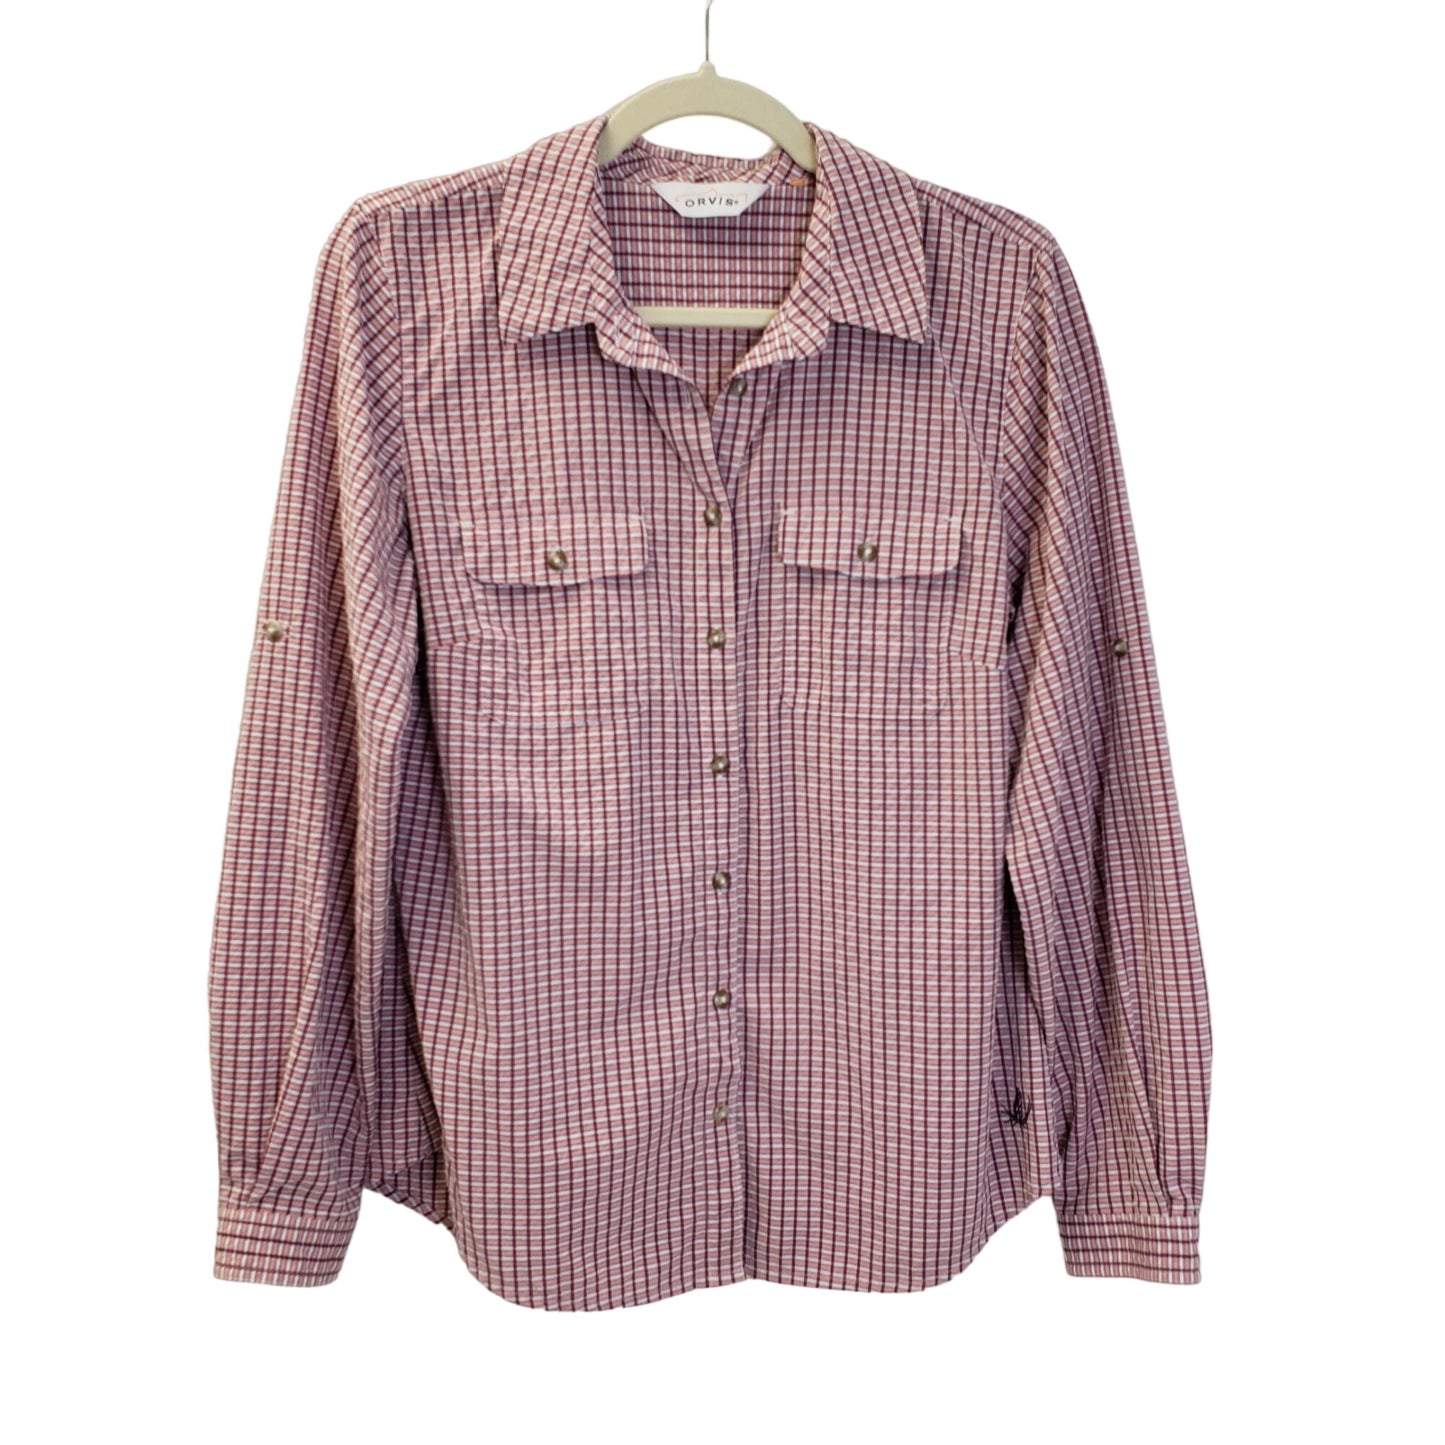 Orvis Plaid Button Down Shirt Size Medium (est)